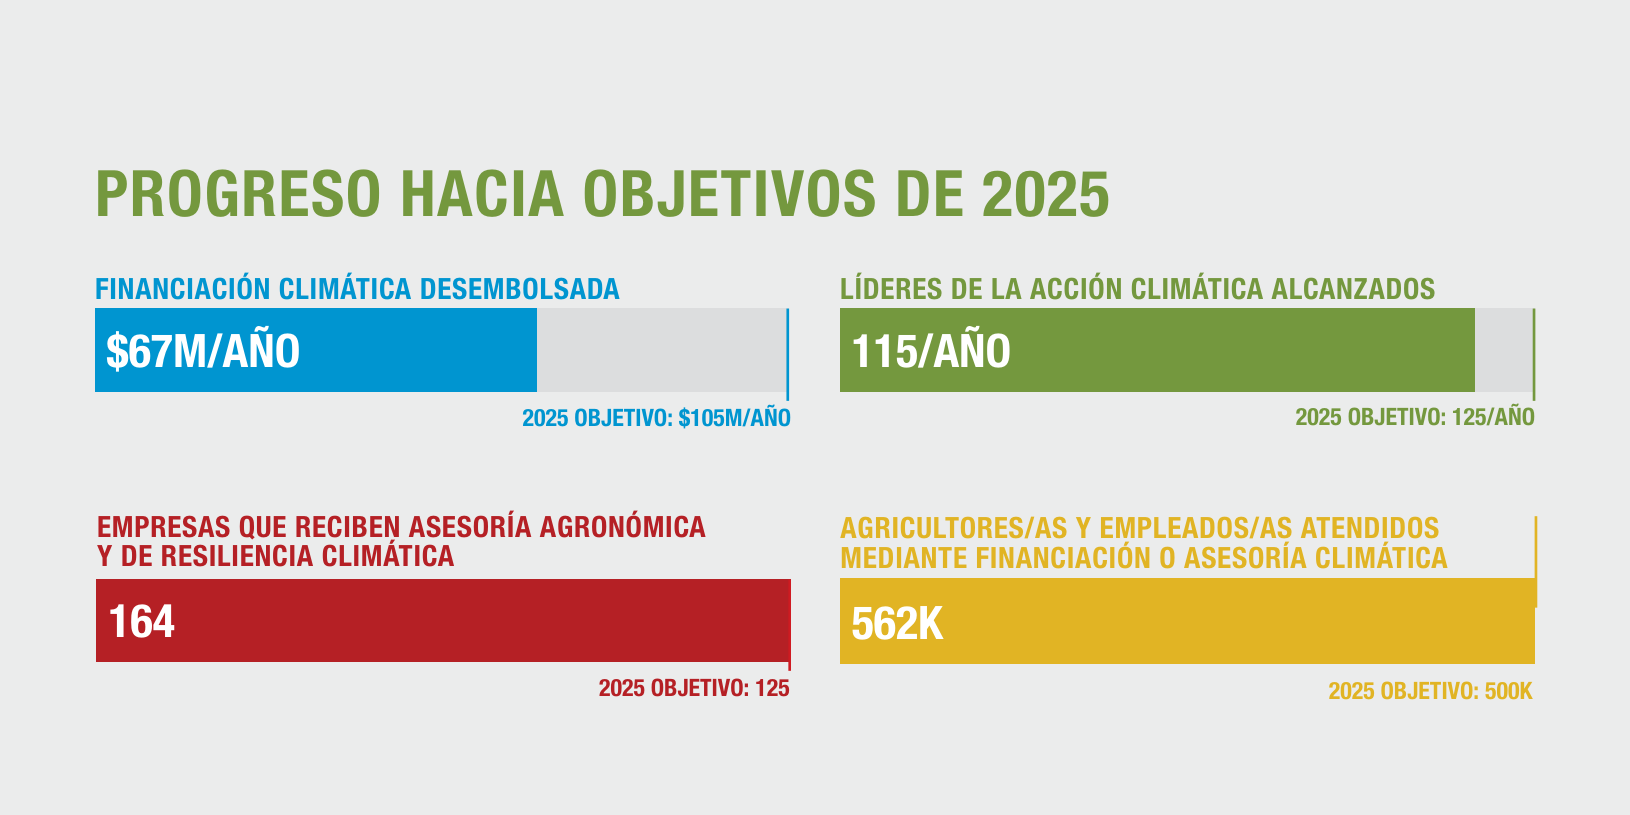 PROGRESO HACIA OBJETIVOS DE 2025 (will be displayed as a graphic in the final report) ● Financiación climática desembolsada (2025 Objetivo: $105M/año): $67M ● Líderes de la acción climática alcanzados (2025 Objetivo: 125/ año): 115 ● Empresas que reciben asesoría agronómica y de resiliencia climática (2025 Objetivo: 125): 164 ● Agricultores/as y empleados/as atendidos mediante financiación o asesoría climática (2025 Objetivo: 500k): 562k